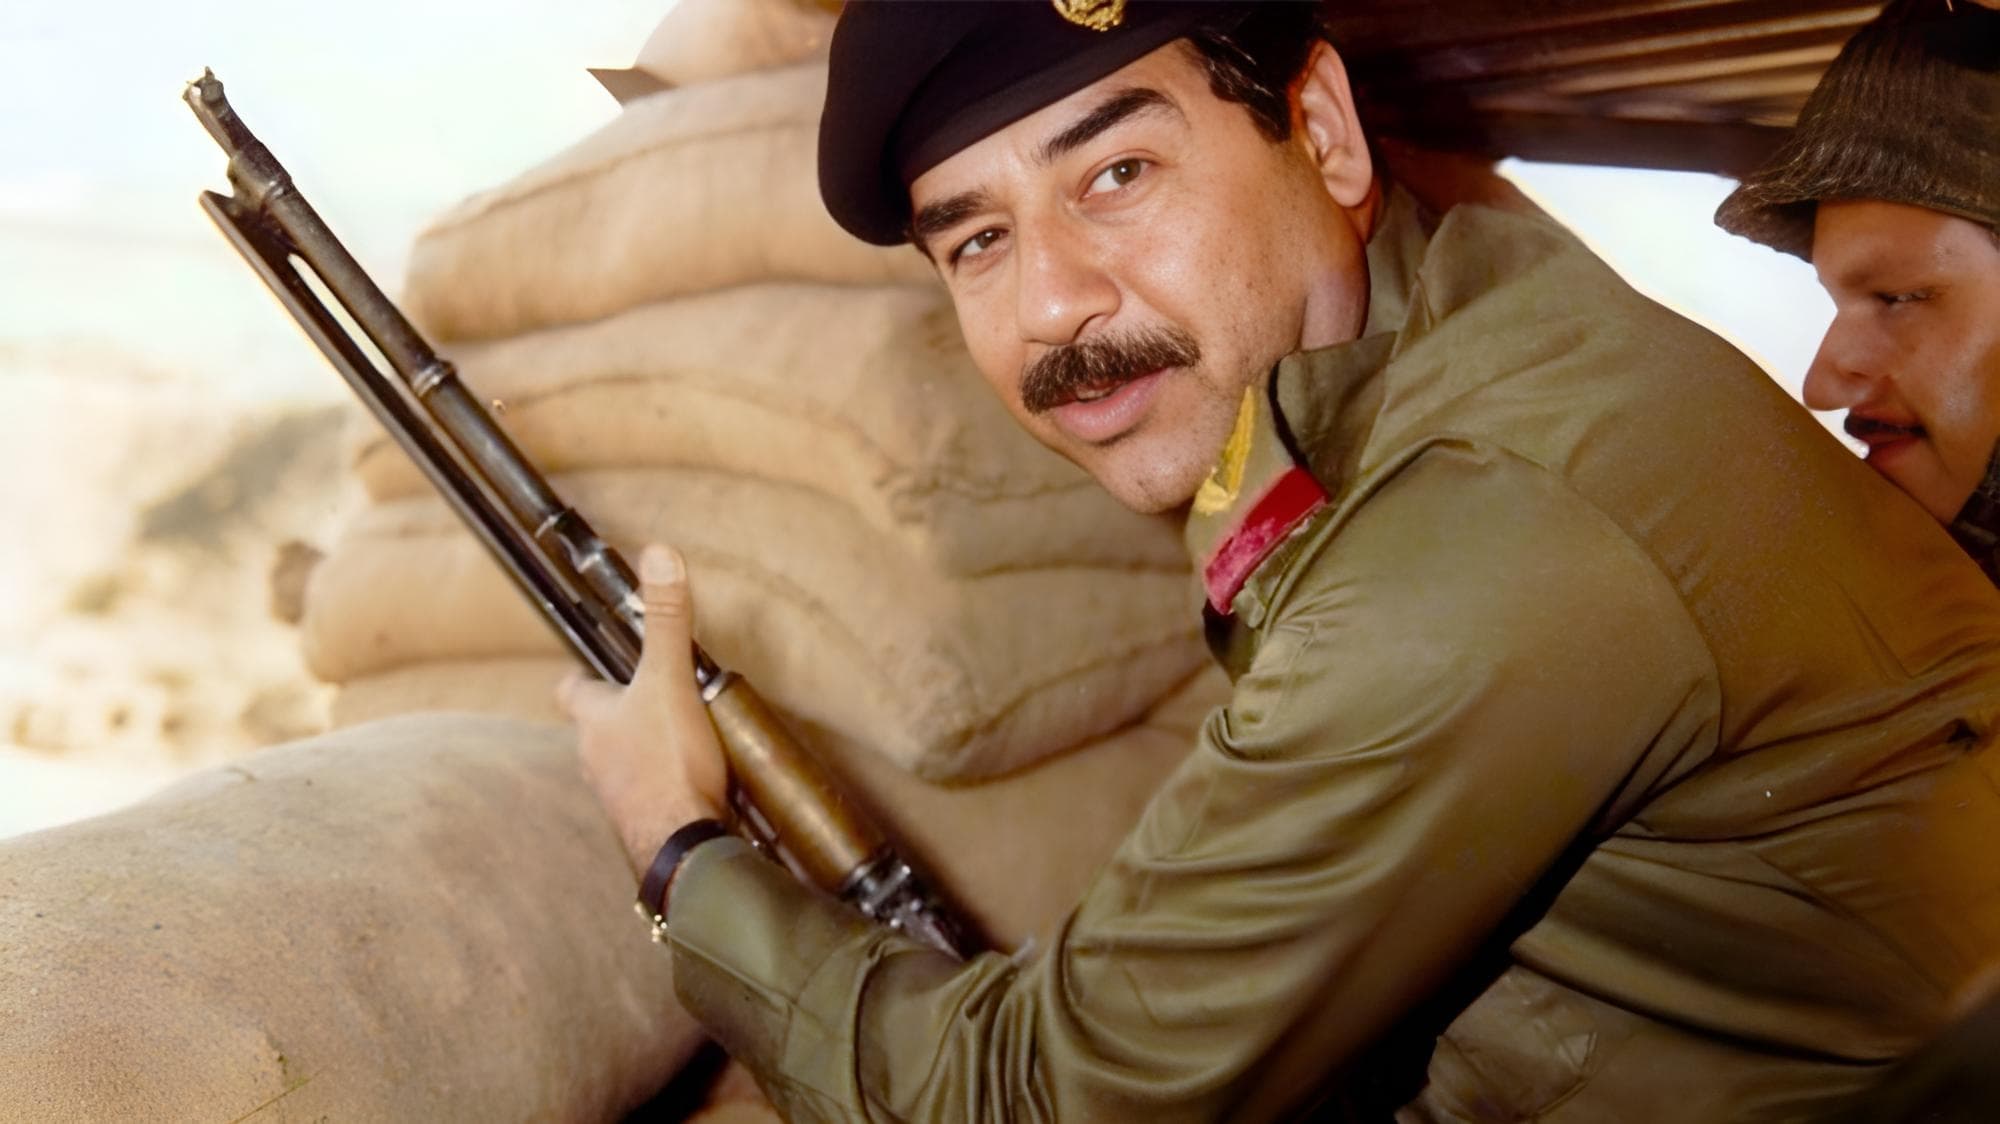 Uncle Saddam (2000)